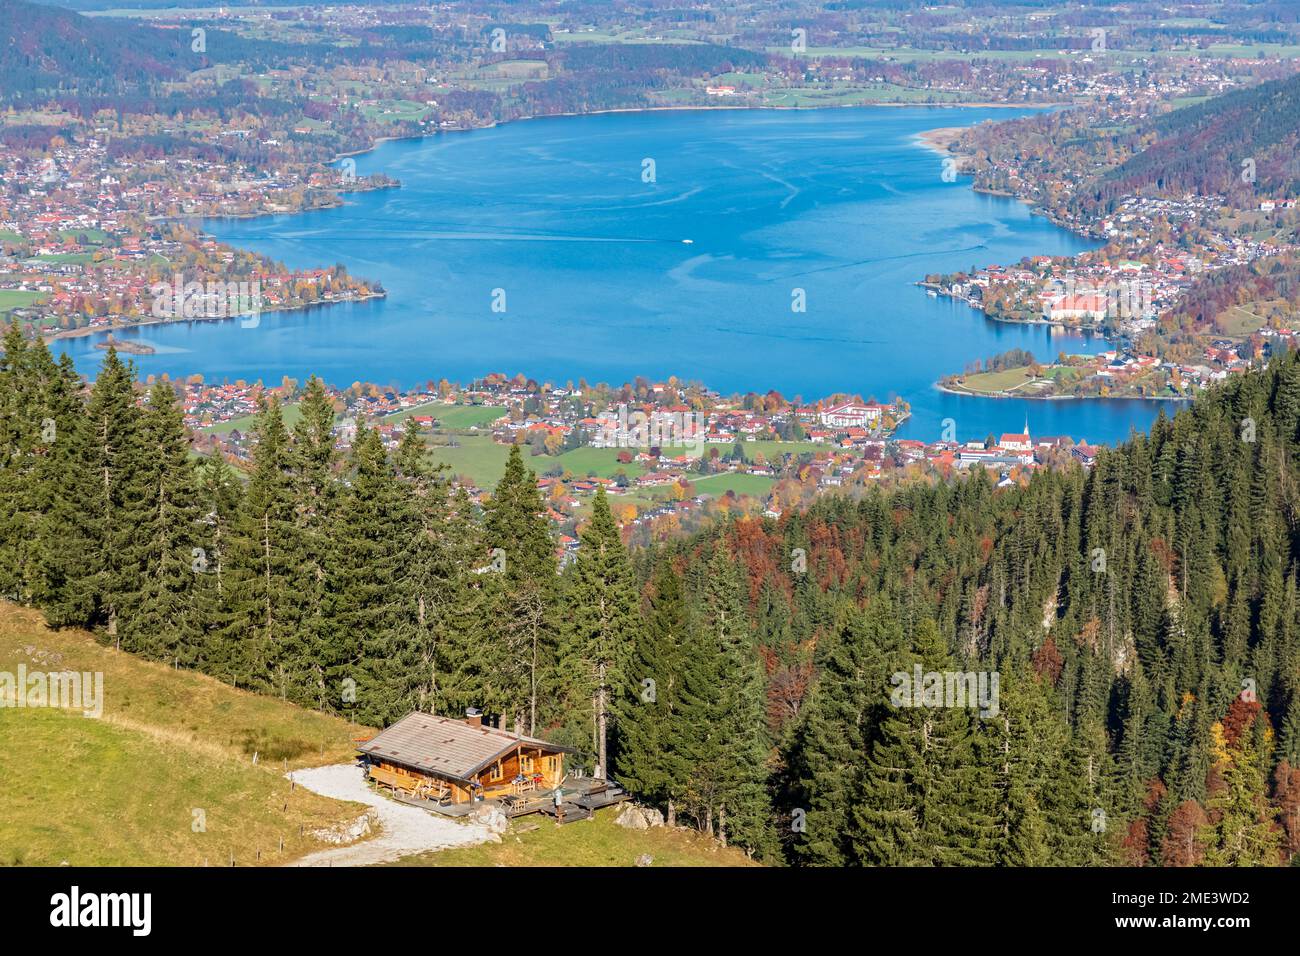 Germania, Baviera, Rottach-Egern, il lago Tegernsee e le città circostanti viste dalla cima del monte Wallberg Foto Stock